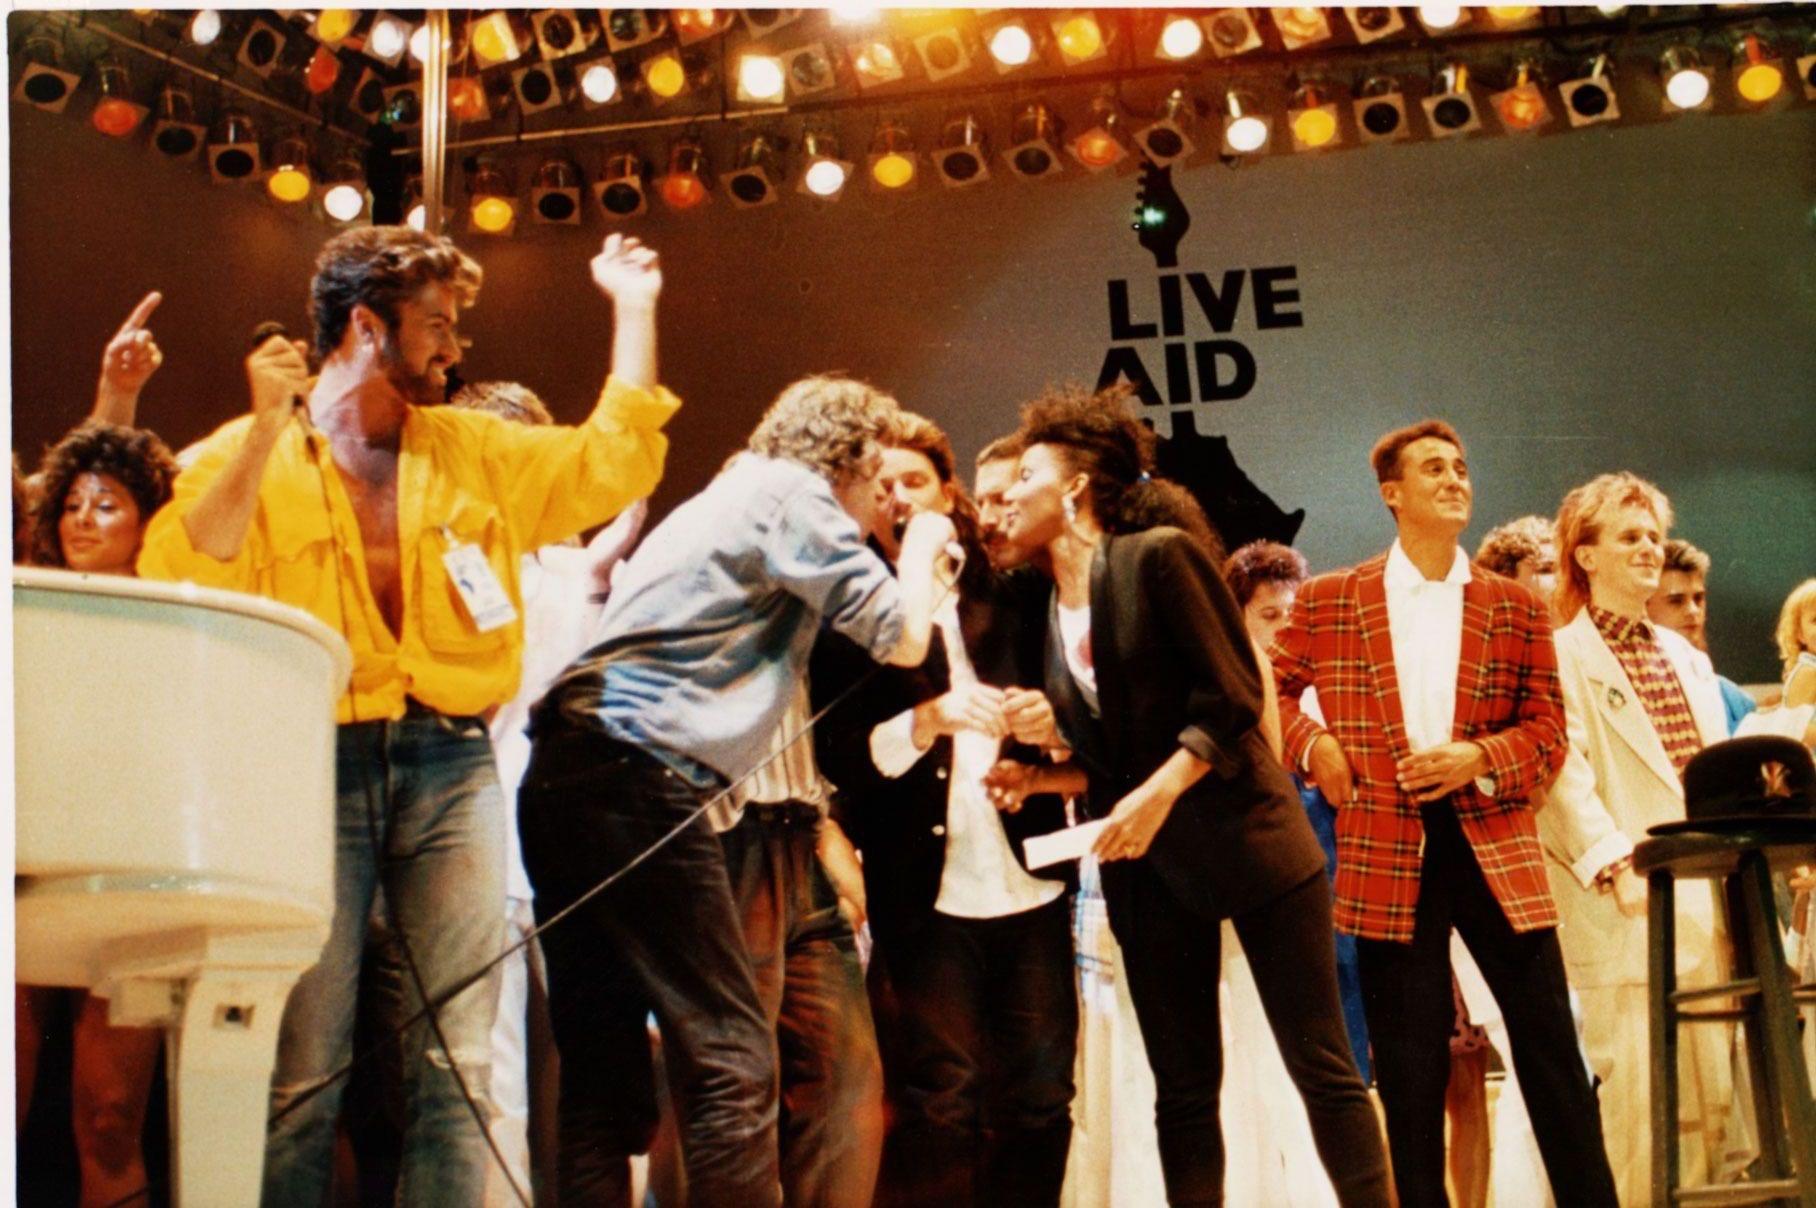 En stor gruppe kjente artister deltok på Live Aid-konserten på Wembley i London i 1985 for å samle inn penger til krisen. F.v.: George Michael, Bob Geldof, Bono, Freddie Mercury, Andrew Ridgley og Howard Jones. 